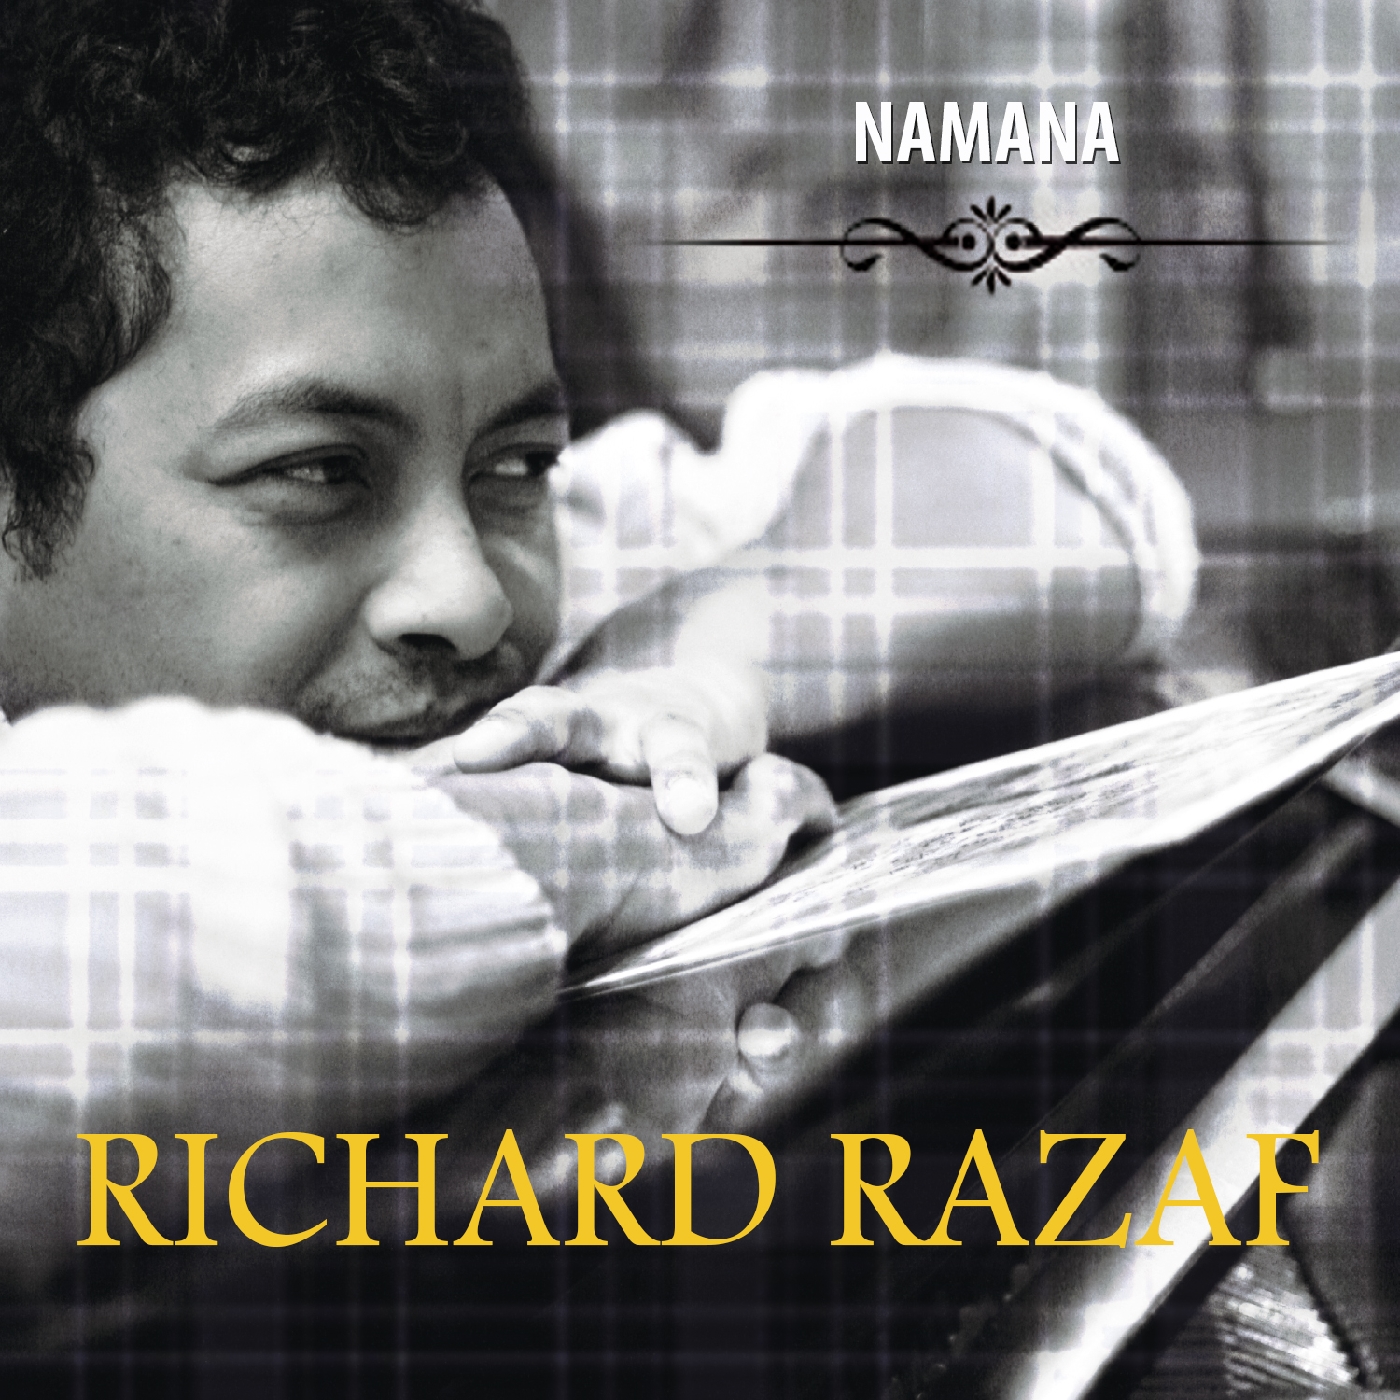 Richard Razaf présente “Namana”, l’ami fidèle.